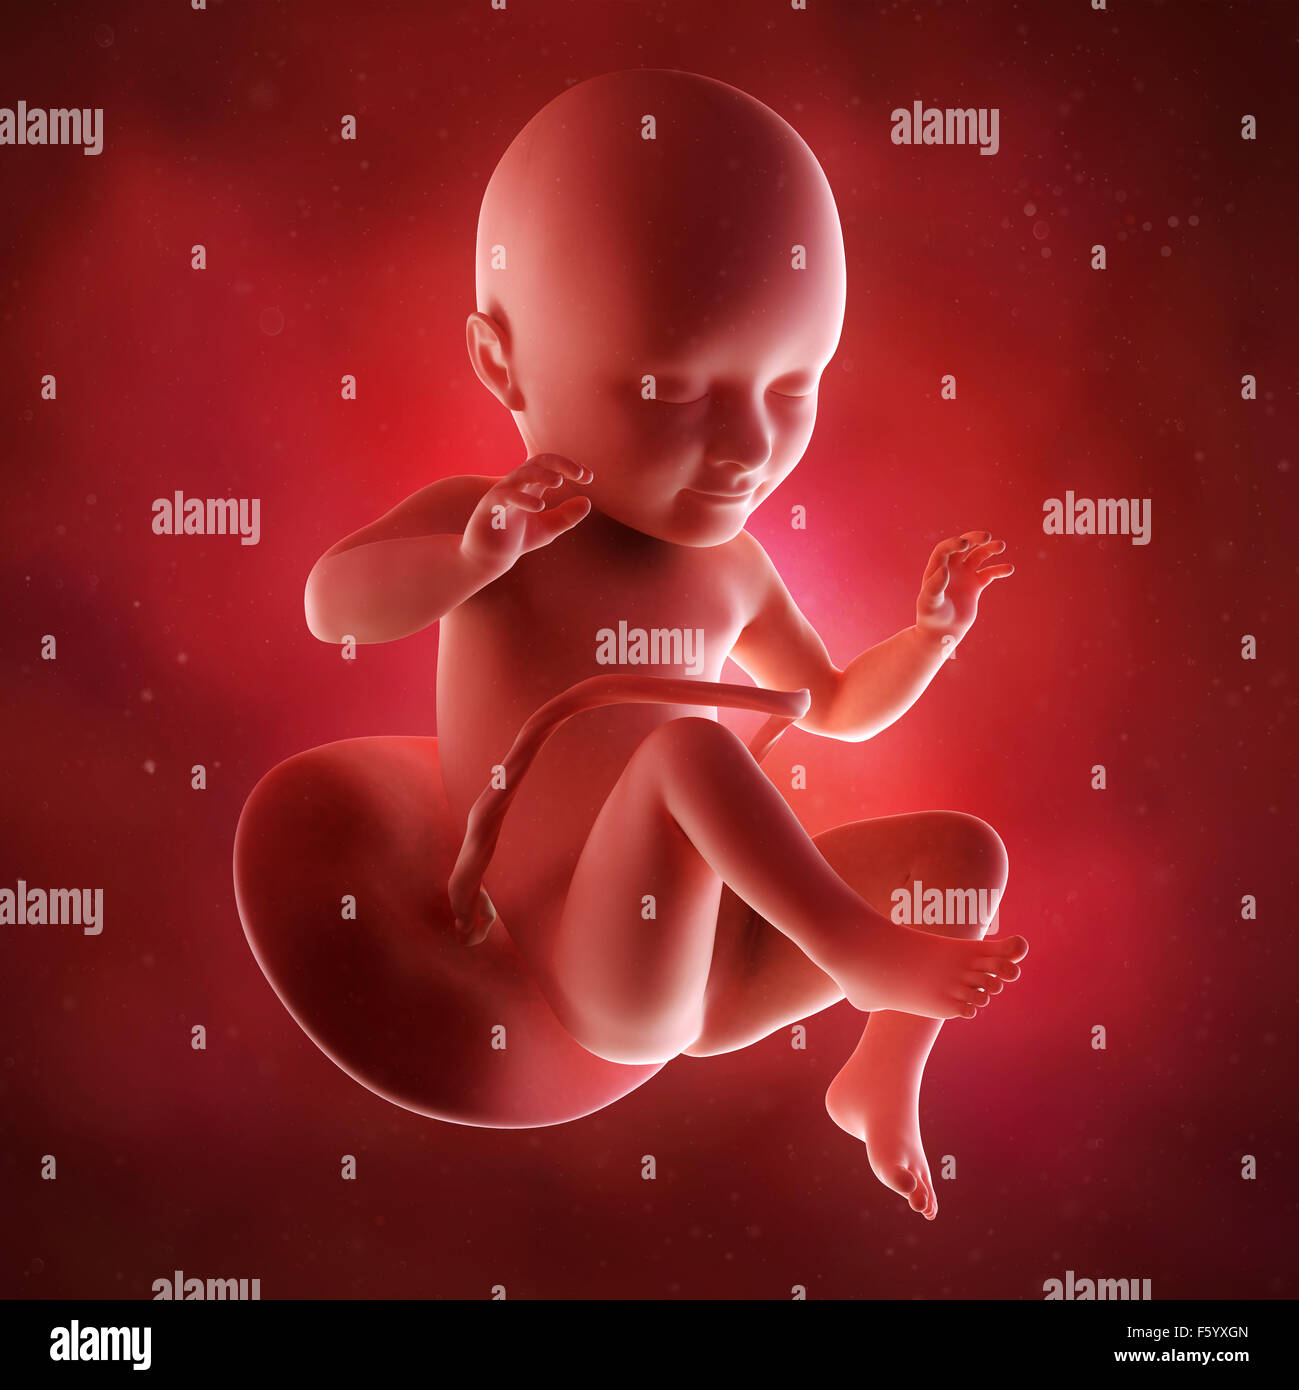 Précision médicale 3d illustration d'un foetus la semaine 34 Banque D'Images